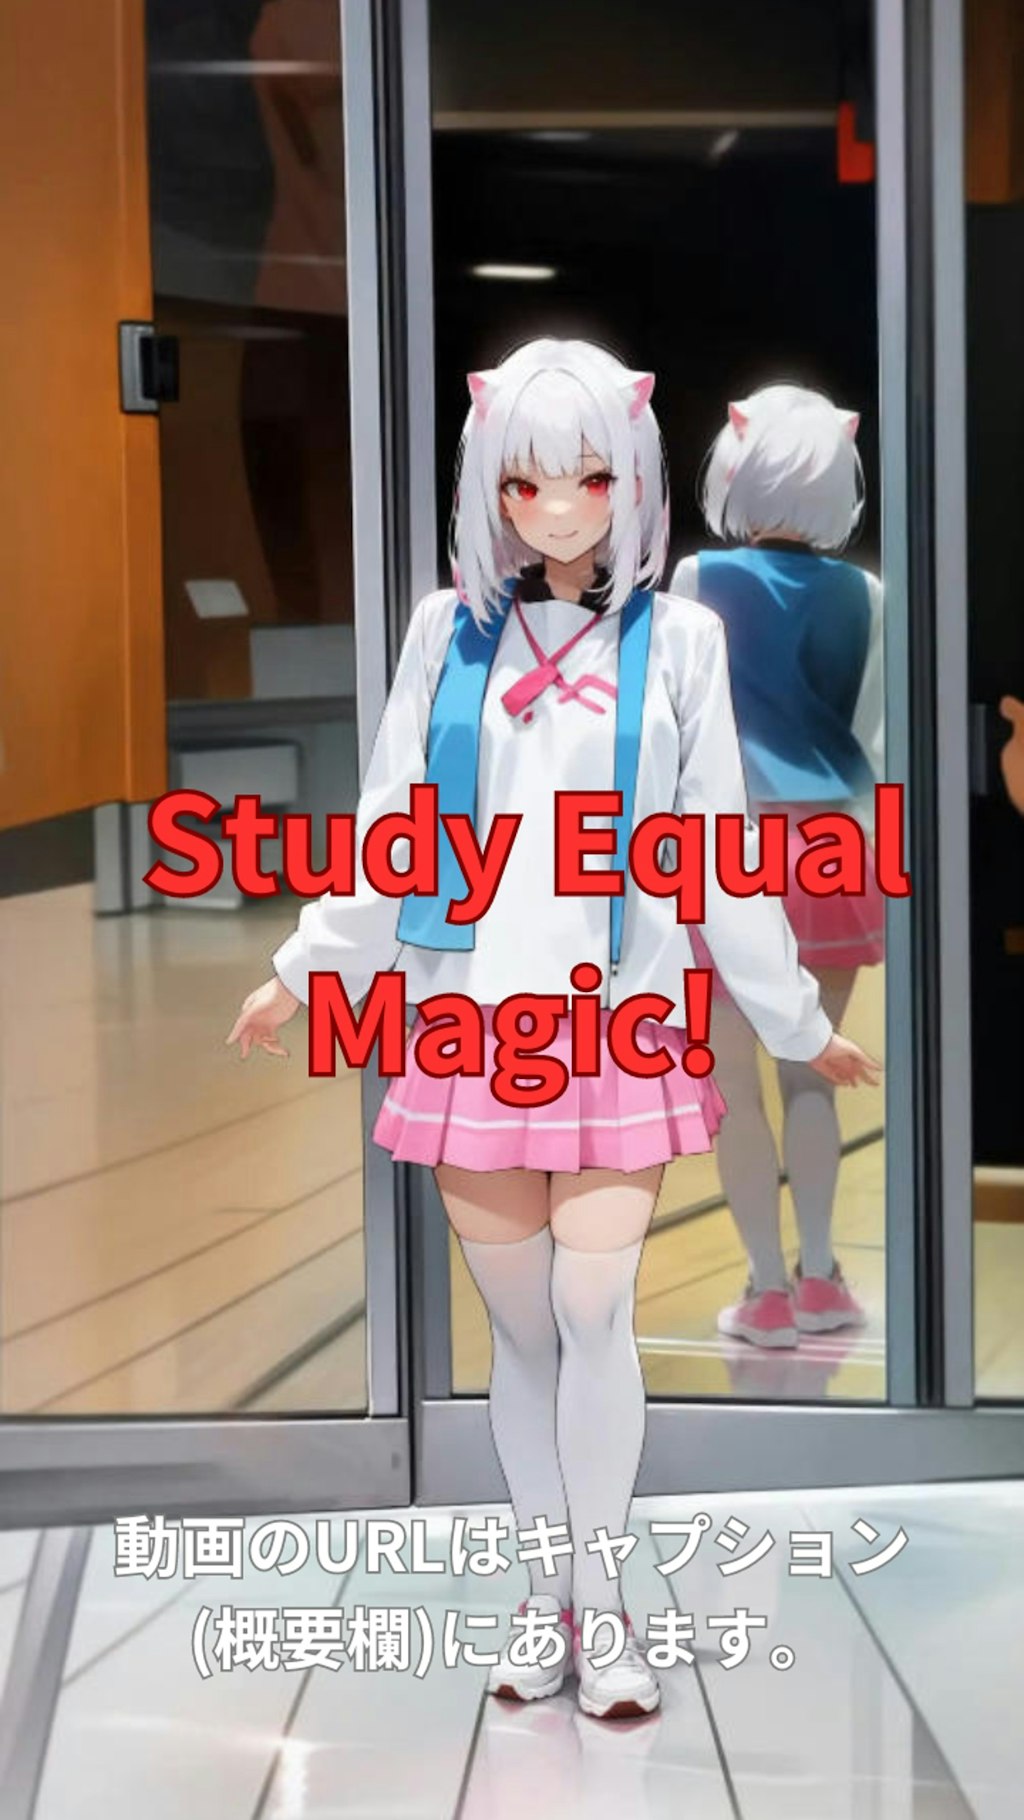 【動画】「Study Equal Magic!」を踊ってみた【Hibara Minene And Frain 様】